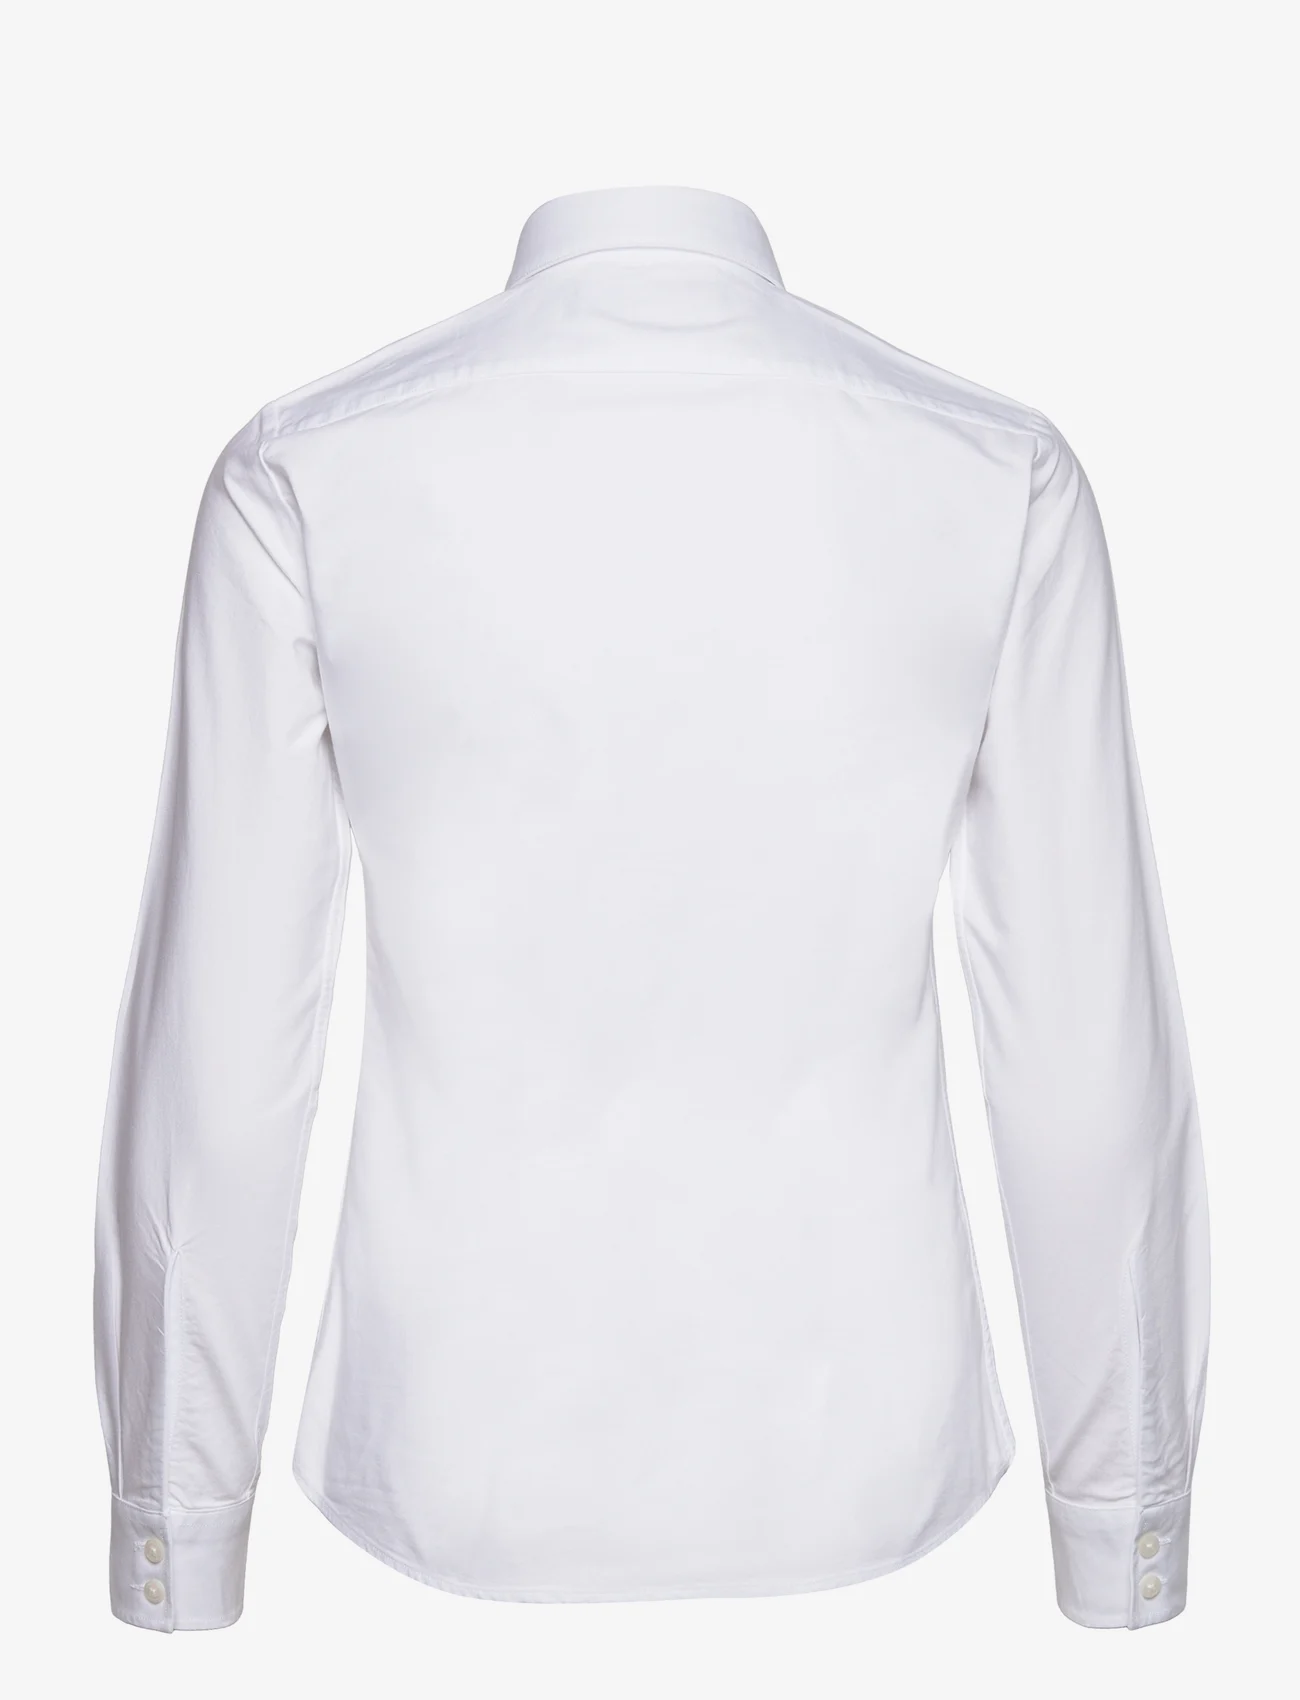 Musto - OXF LS SHIRT FW - pitkähihaiset paidat - 002 bright white - 1